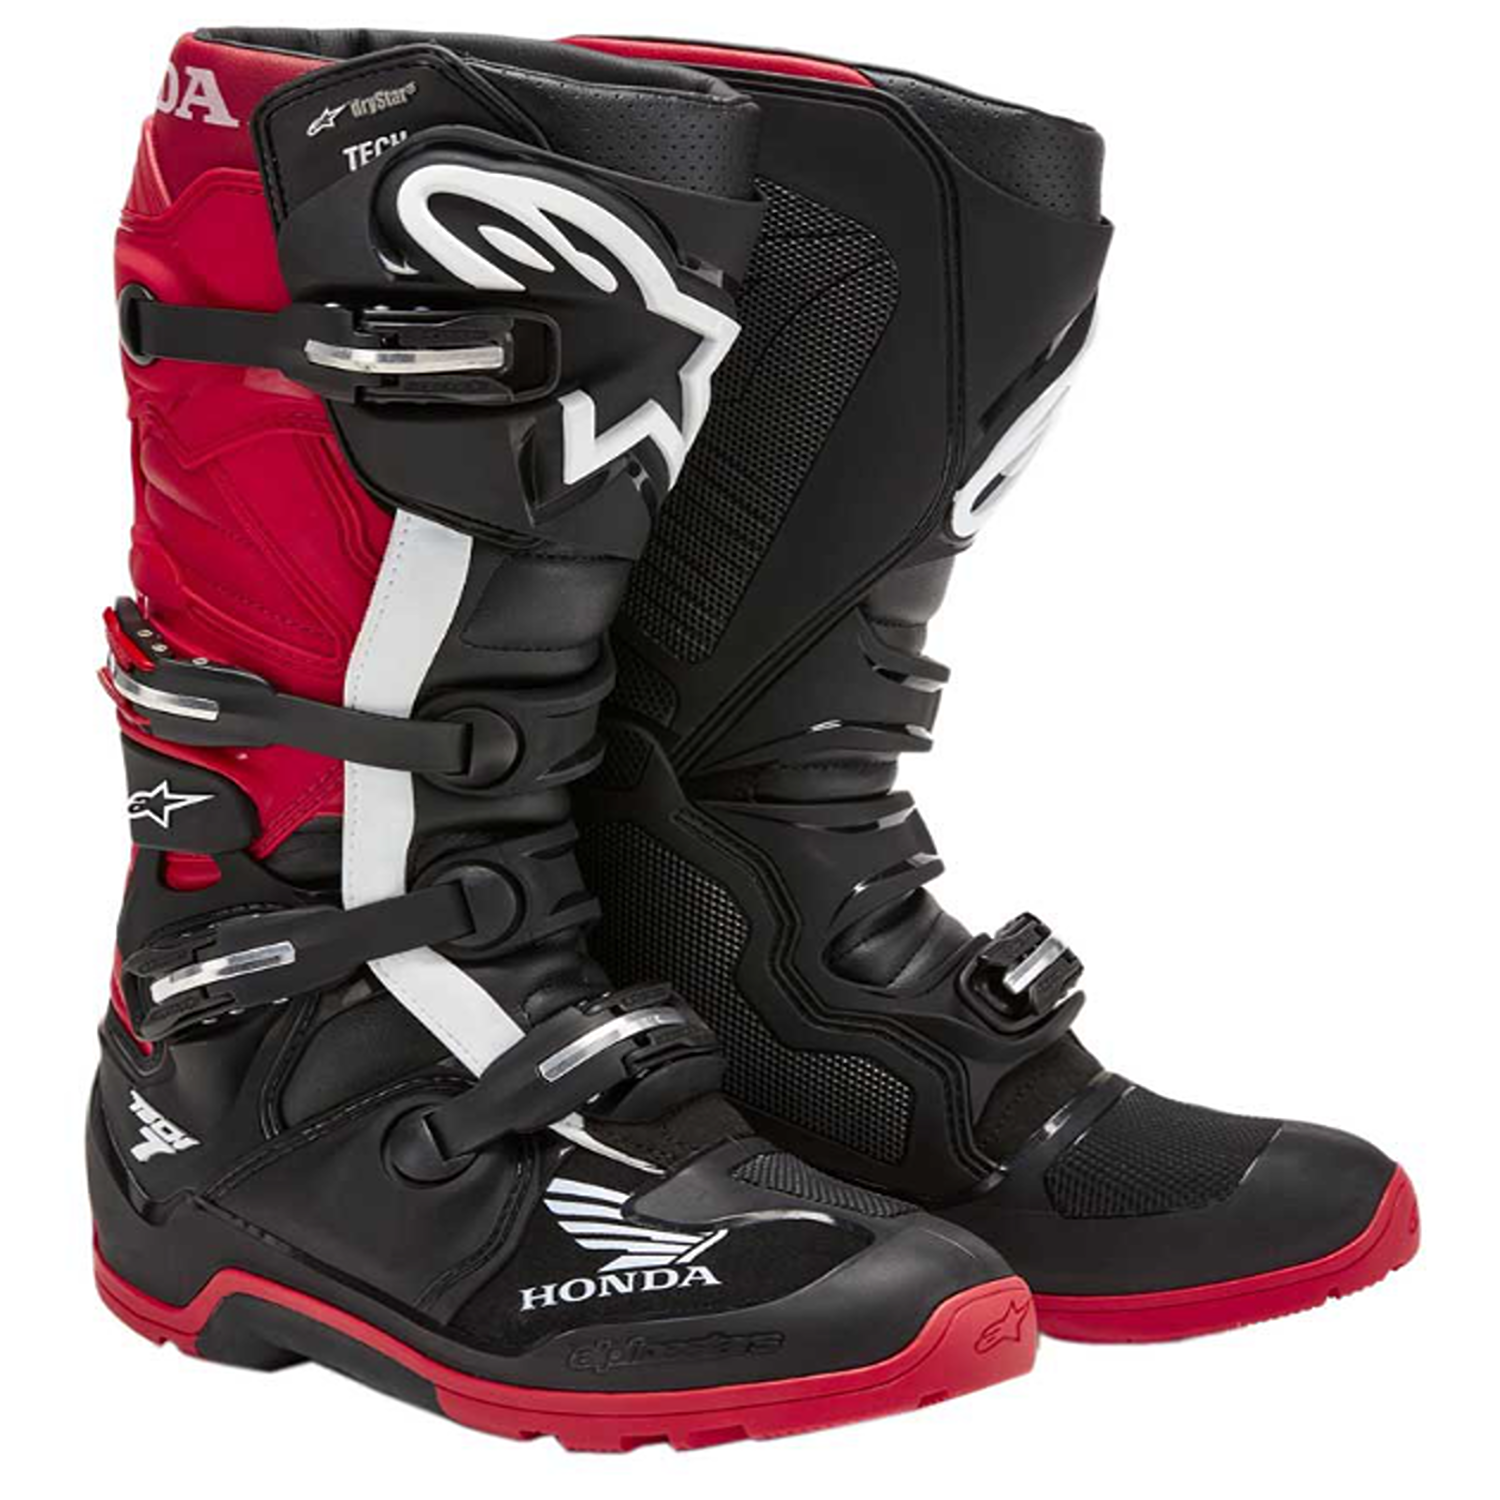 Image of Alpinestars Honda Tech 7 Enduro Drystar Boots Black Bright Red Talla US 5